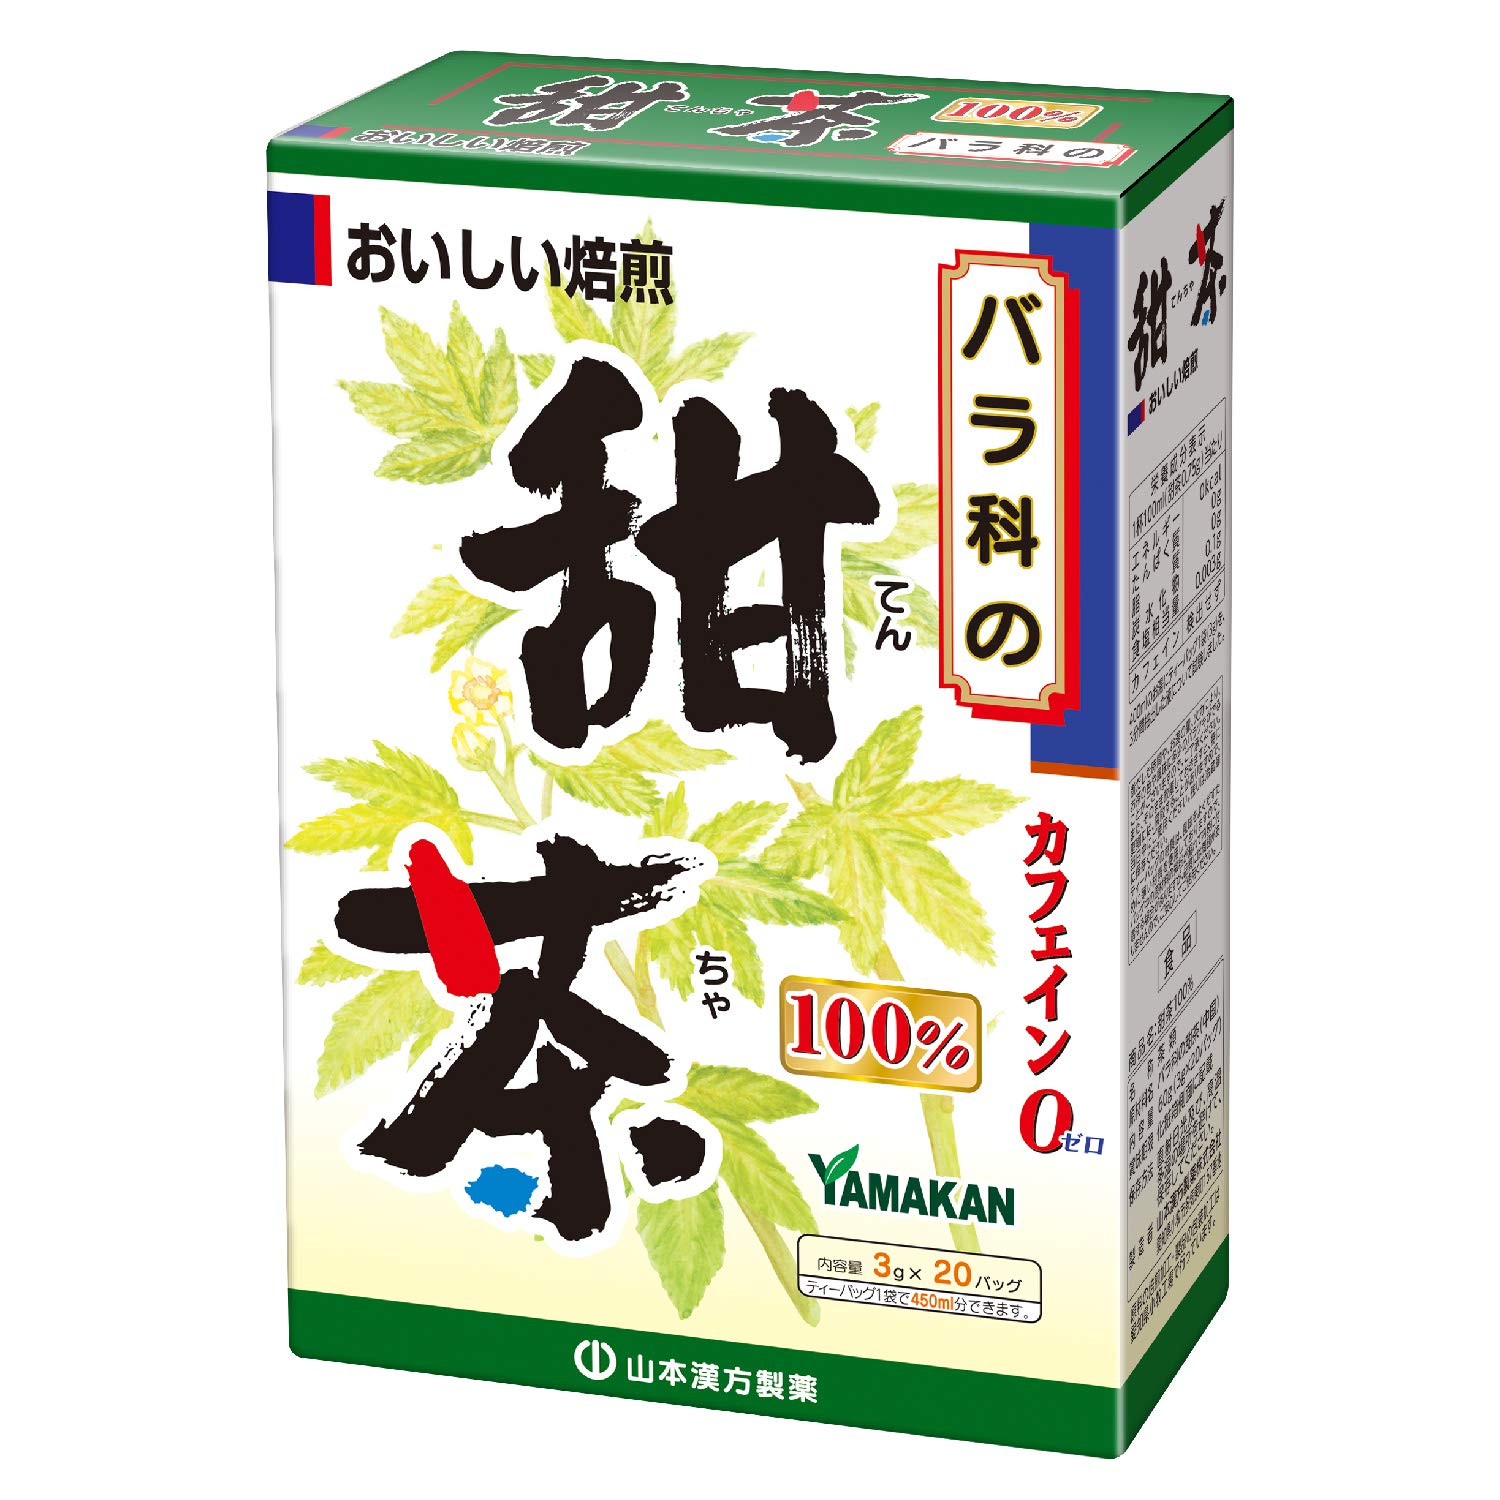 山本漢方製薬 甜茶100% 3gX20H